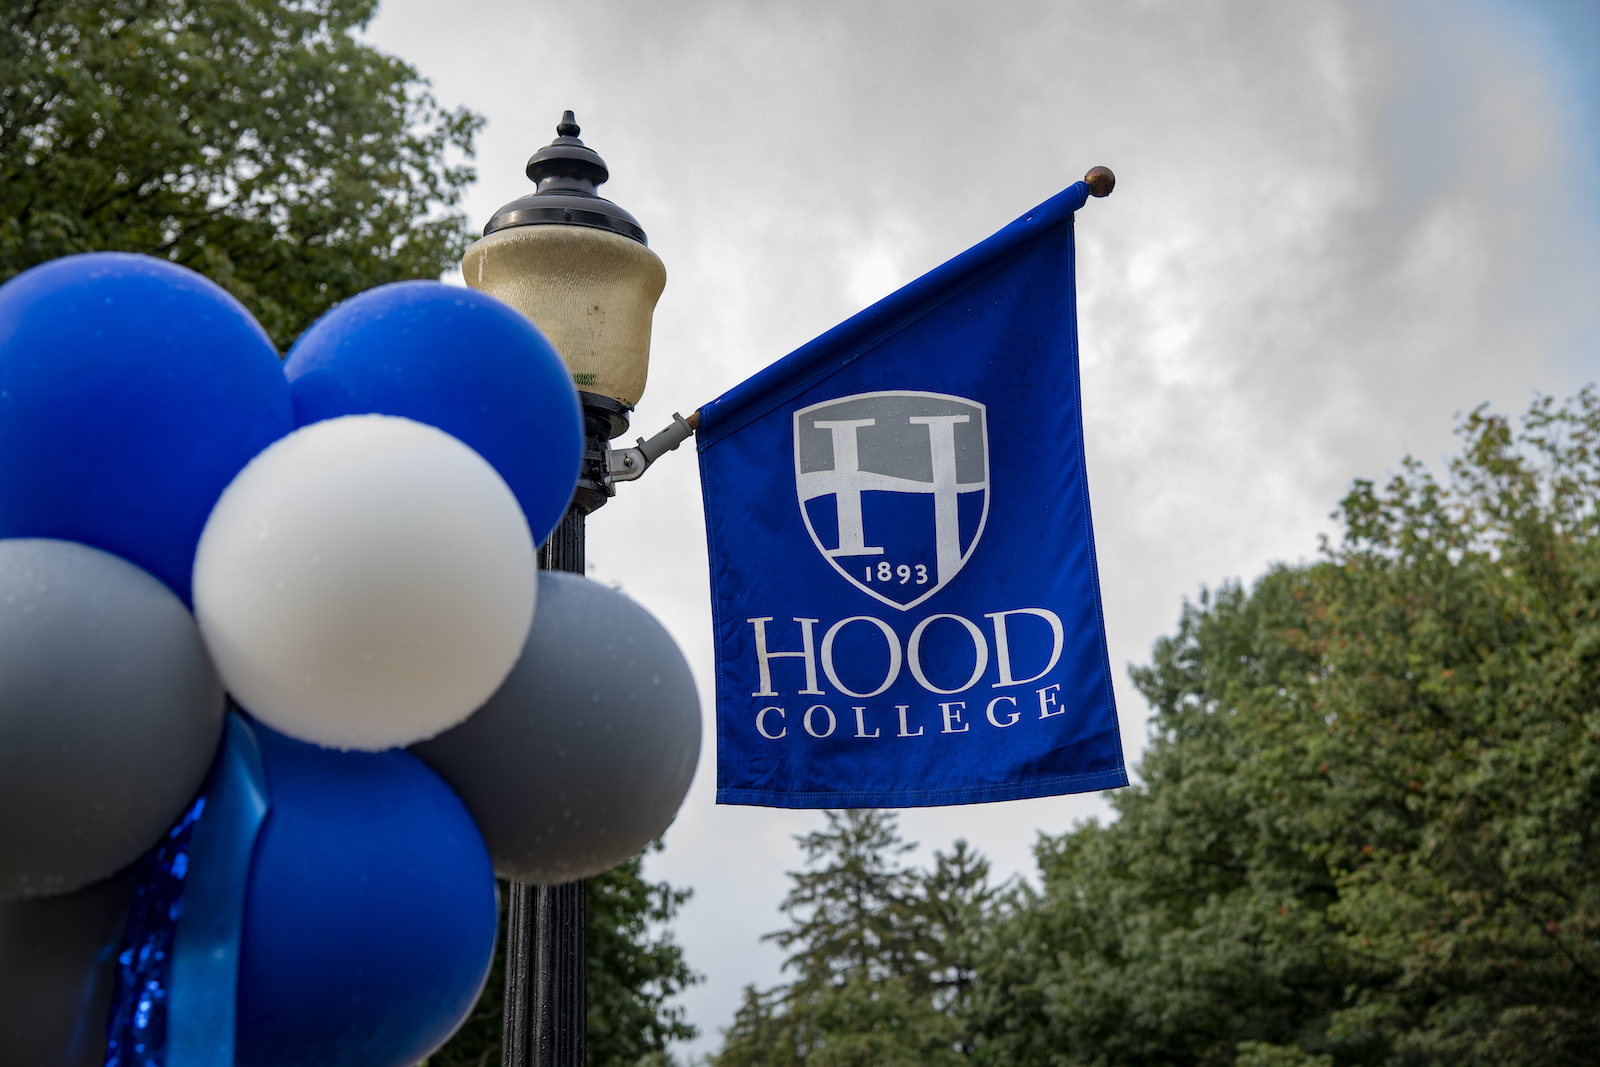 hood banner and balloons